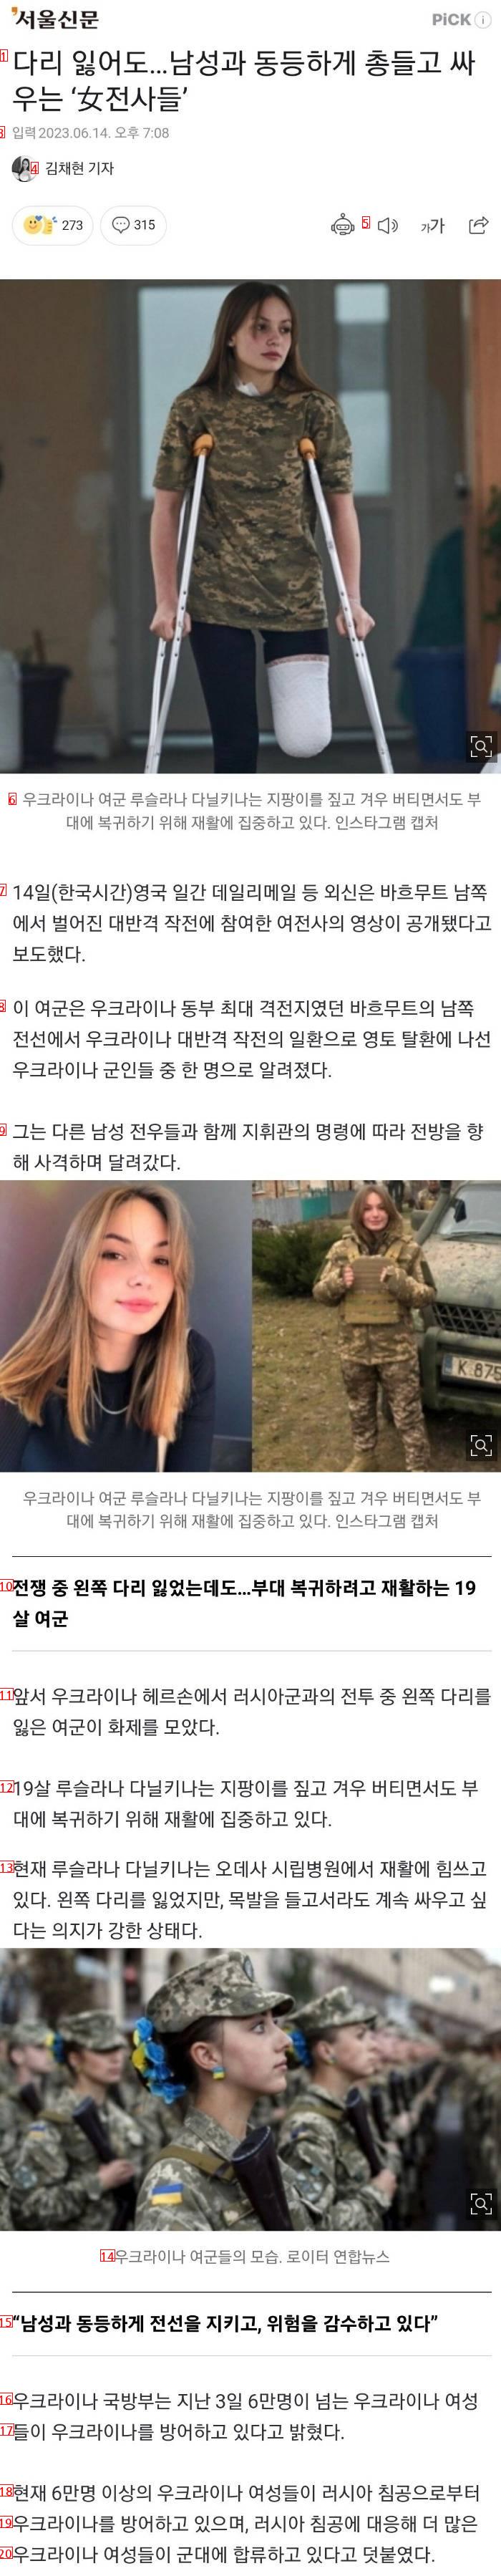 한국 페미년들이 본받아야할 우크라이나 여군